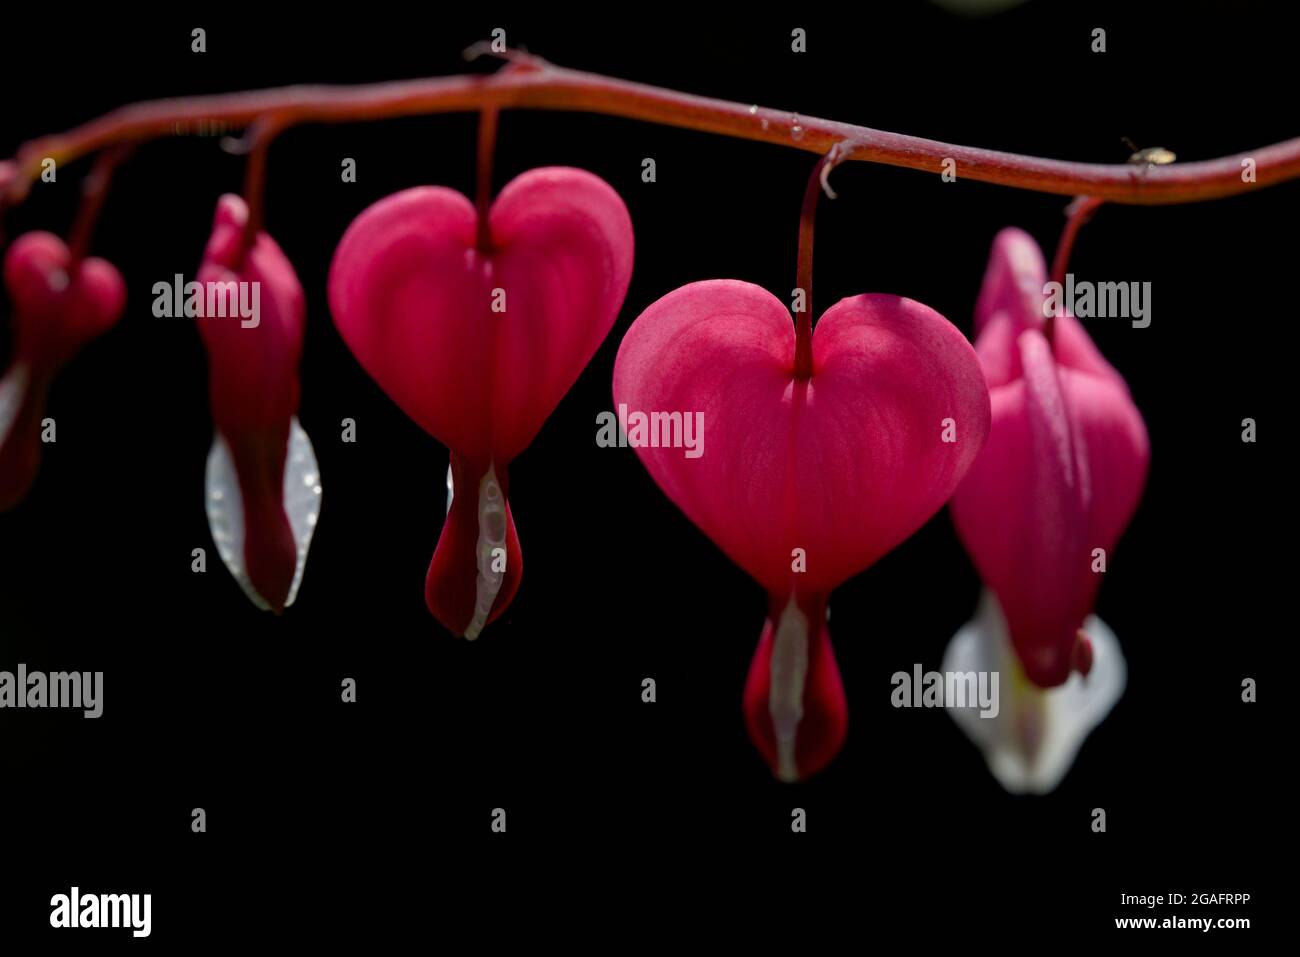 Gros plan de fleurs roses romantiques en forme de coeurs d'amour. Officiellement connu sous le nom de Lamprocapnos spectabilis, mais aussi comme coeur asiatique de saignement. Banque D'Images